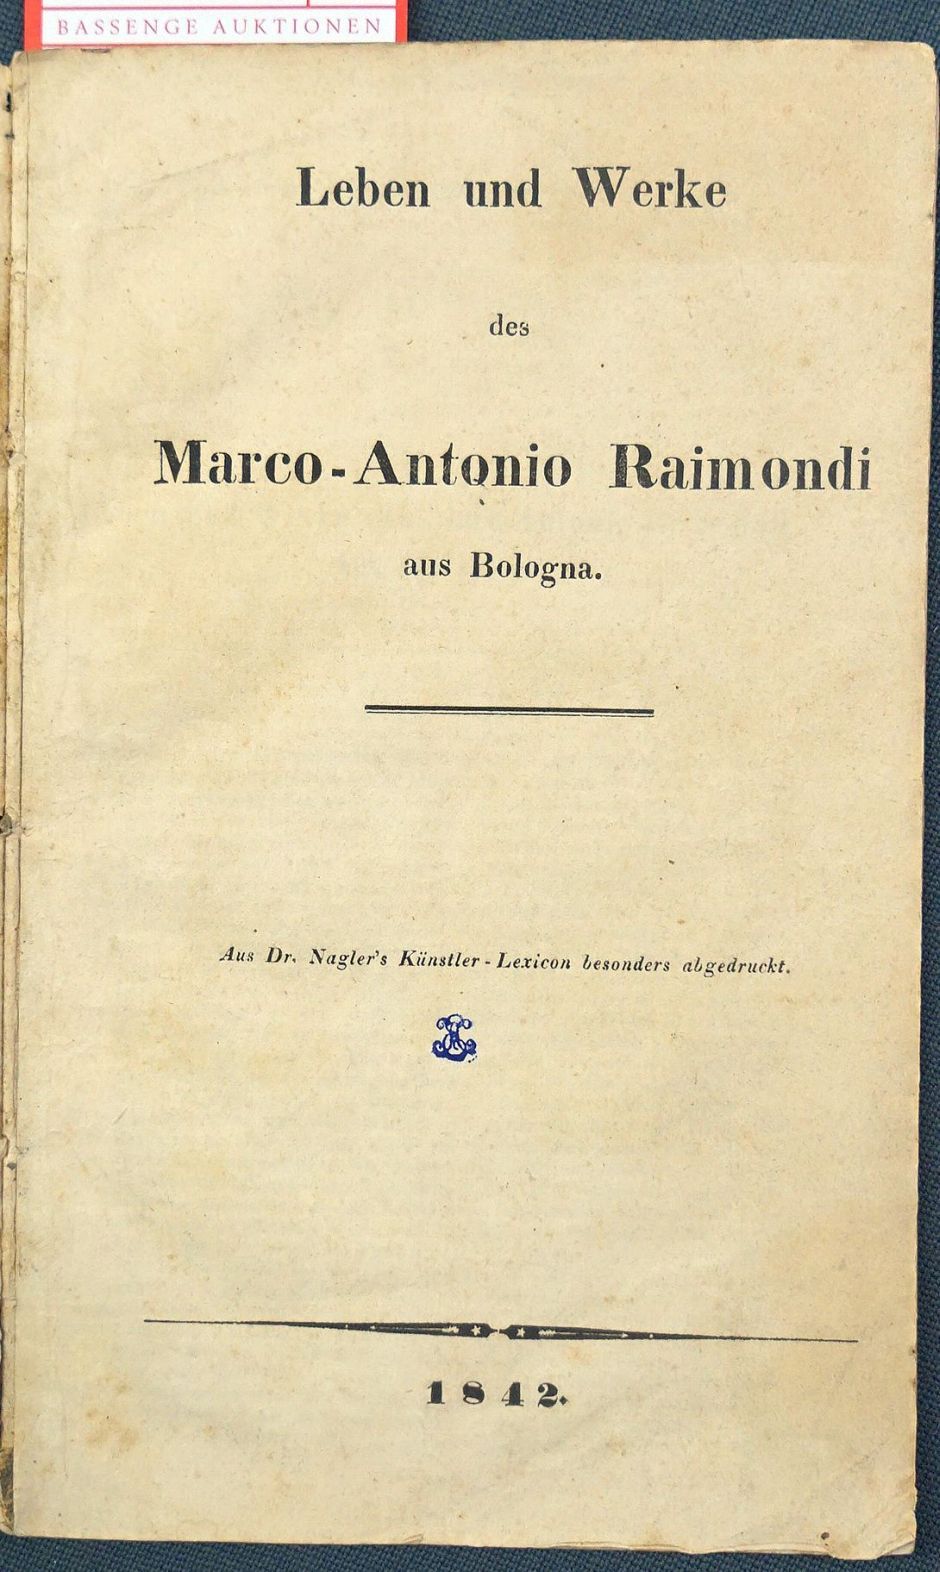 Lot 1367, Auction  115, Nagler, Georg K., Leben und Werke des Marco-Antonio Raimondi aus Bologna